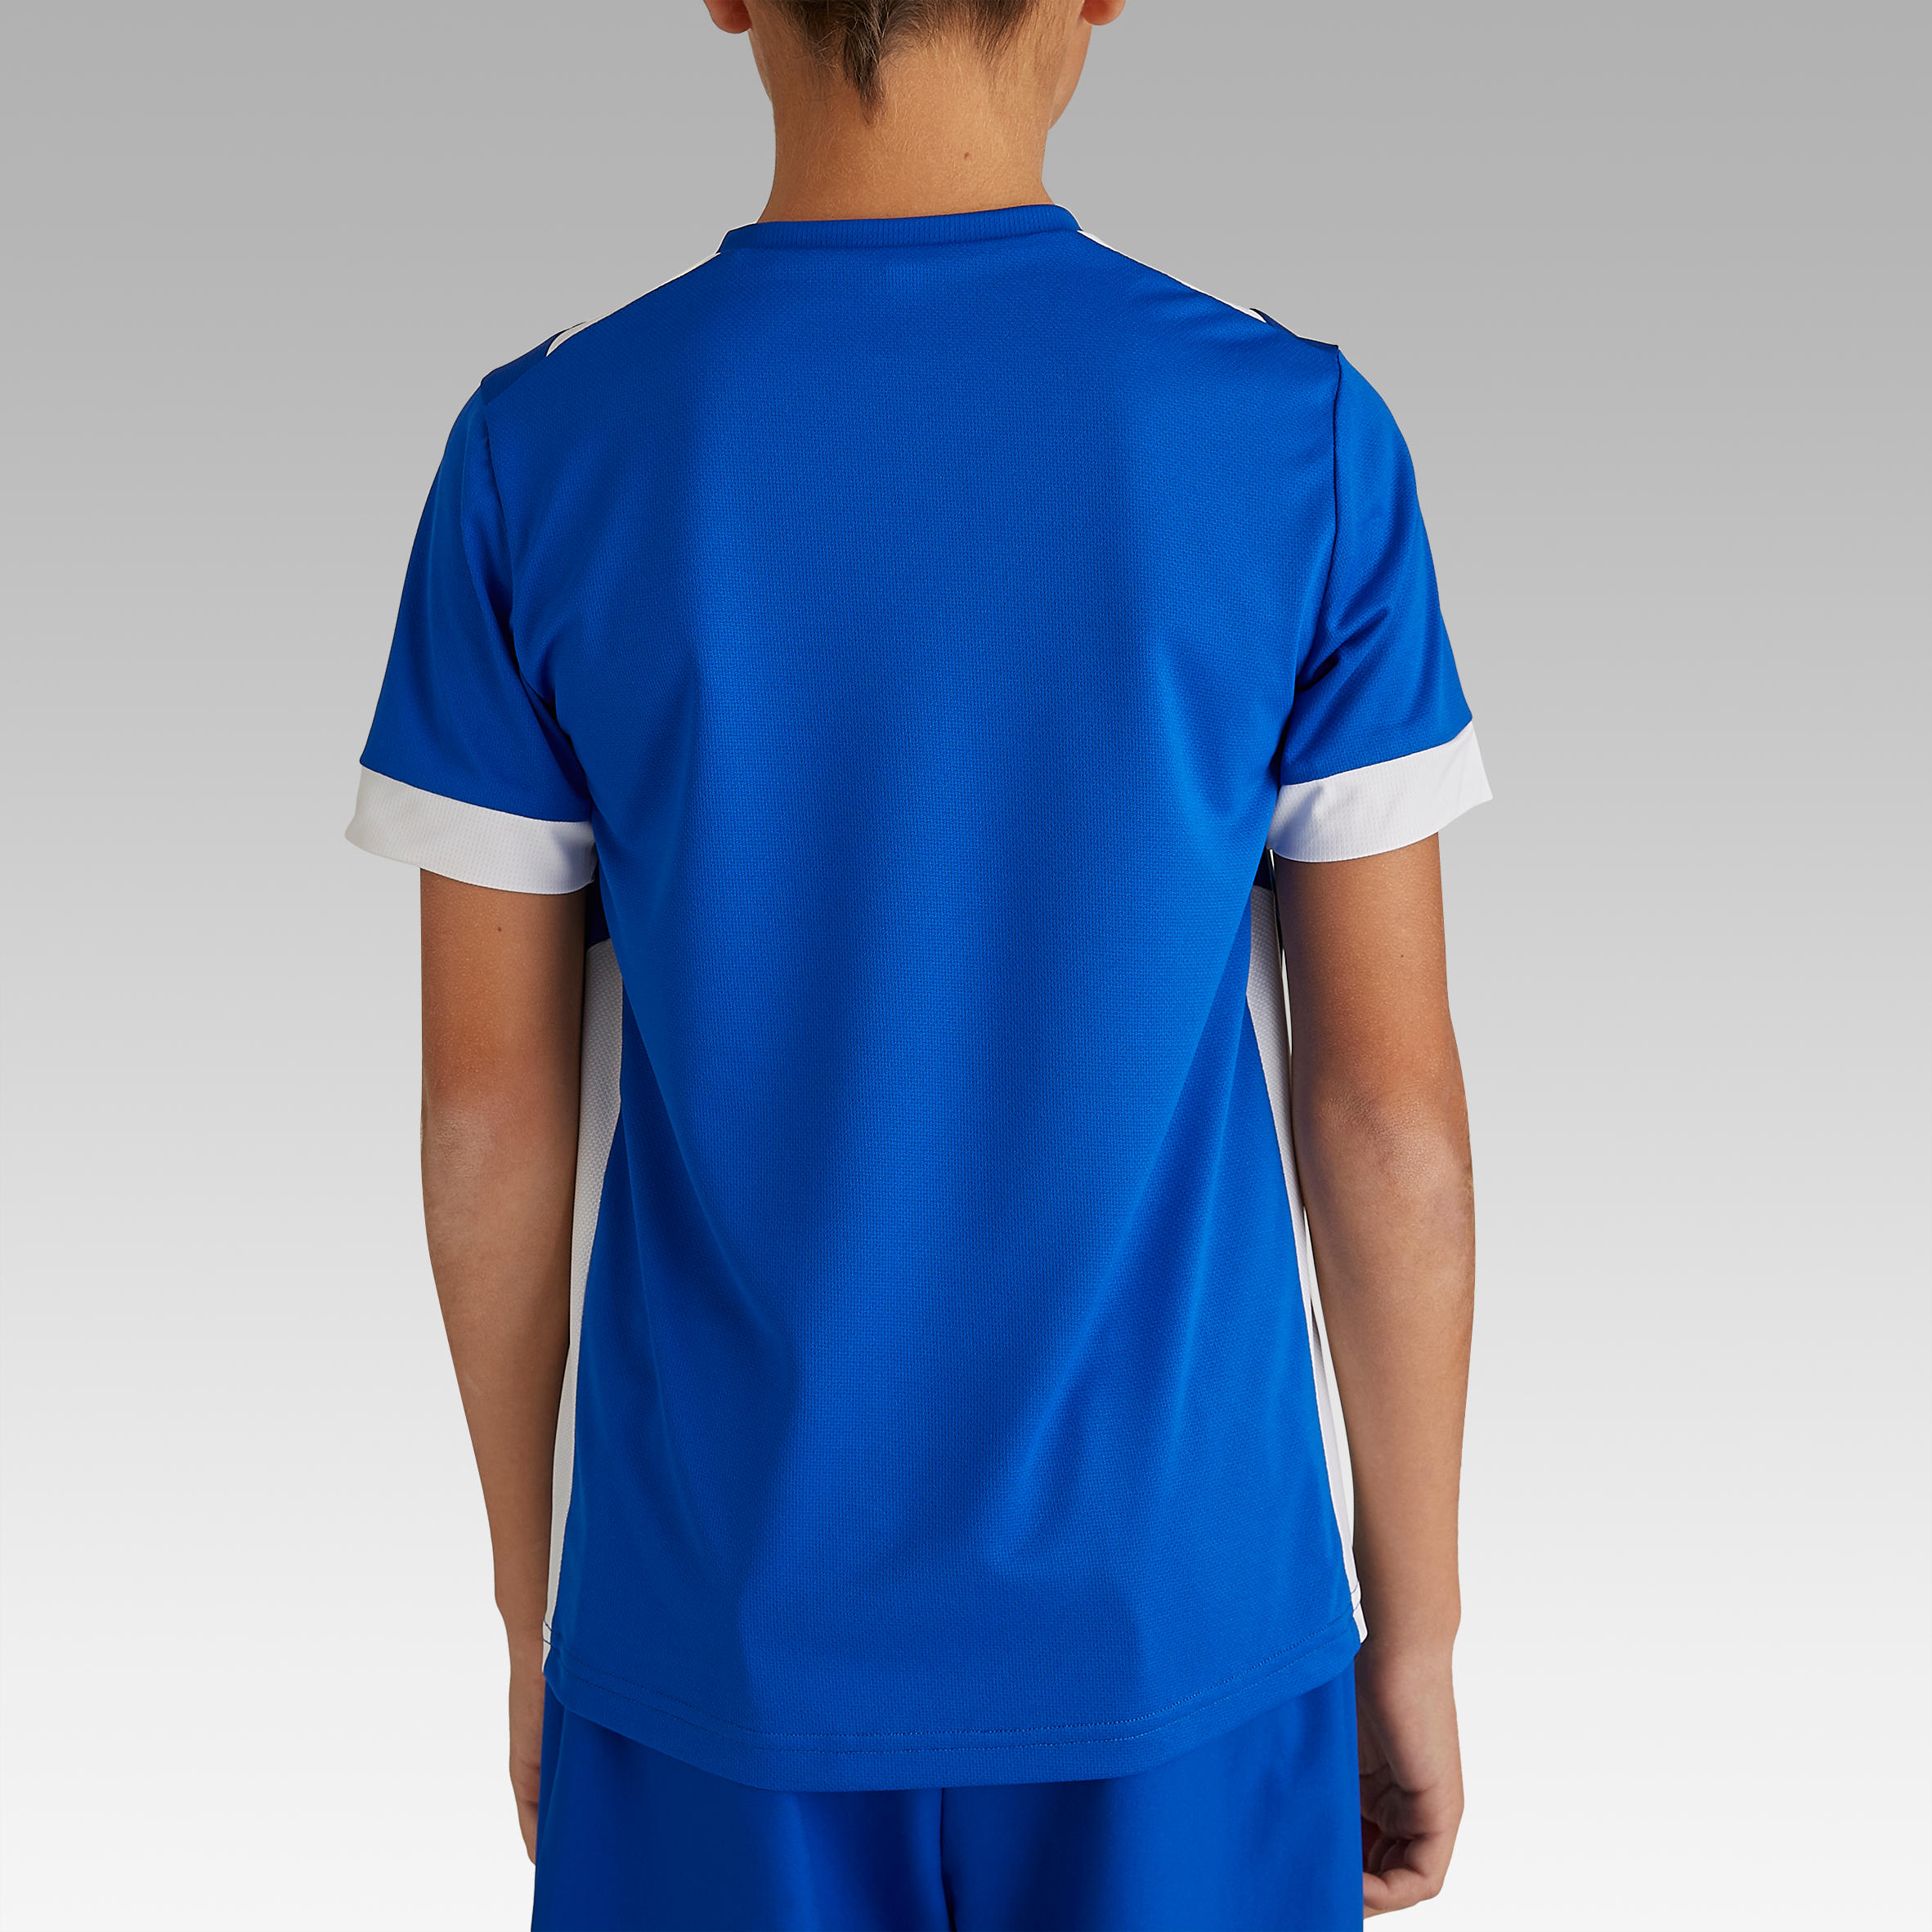 Kids' Short-Sleeved Football Shirt F500 - Blue 4/9